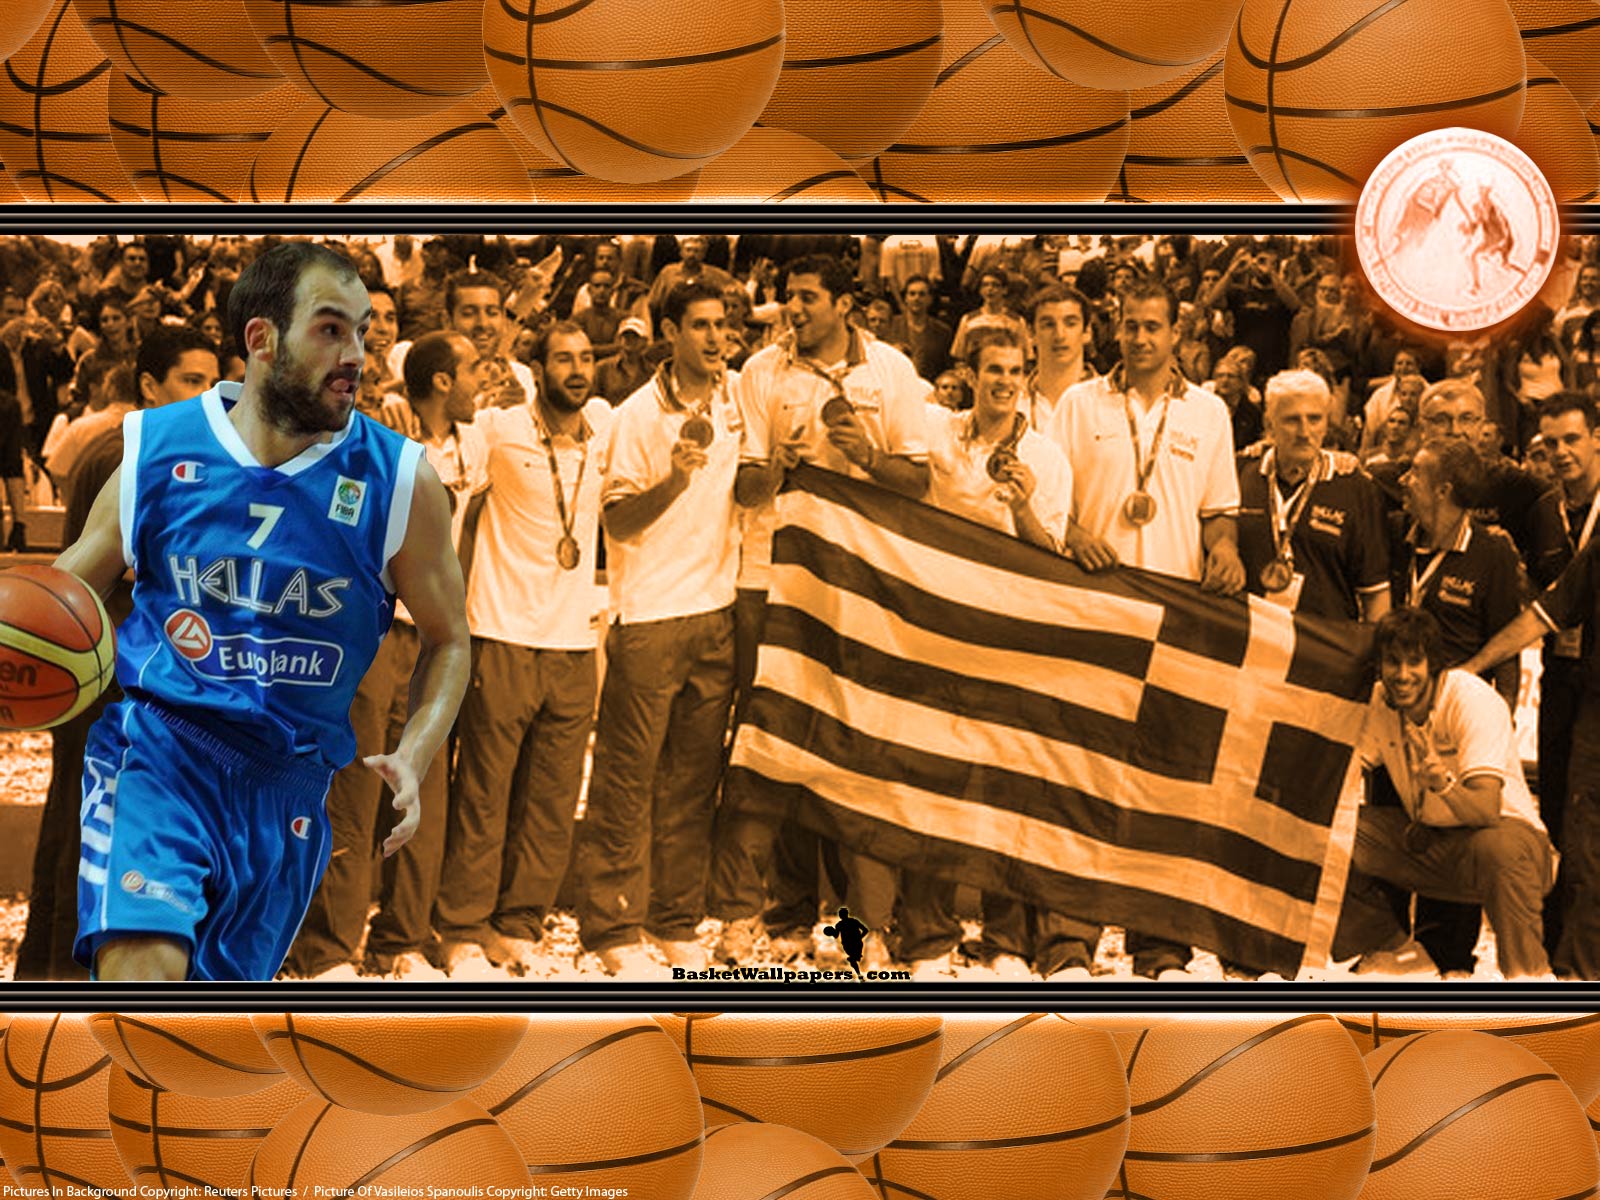 Greece Eurobasket 2009 Wallpaper - National Basketball Greek Team - HD Wallpaper 